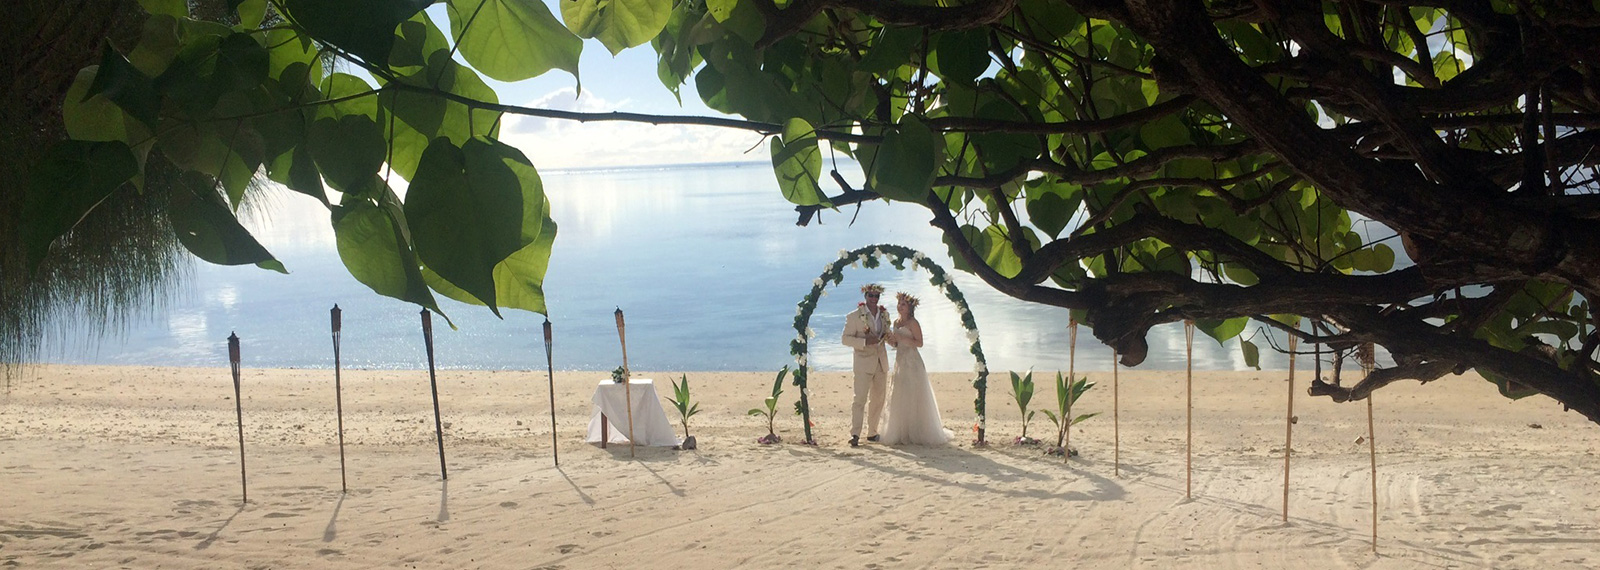 Wedding in paradise - Hawaii, Fiji or Cook Islands